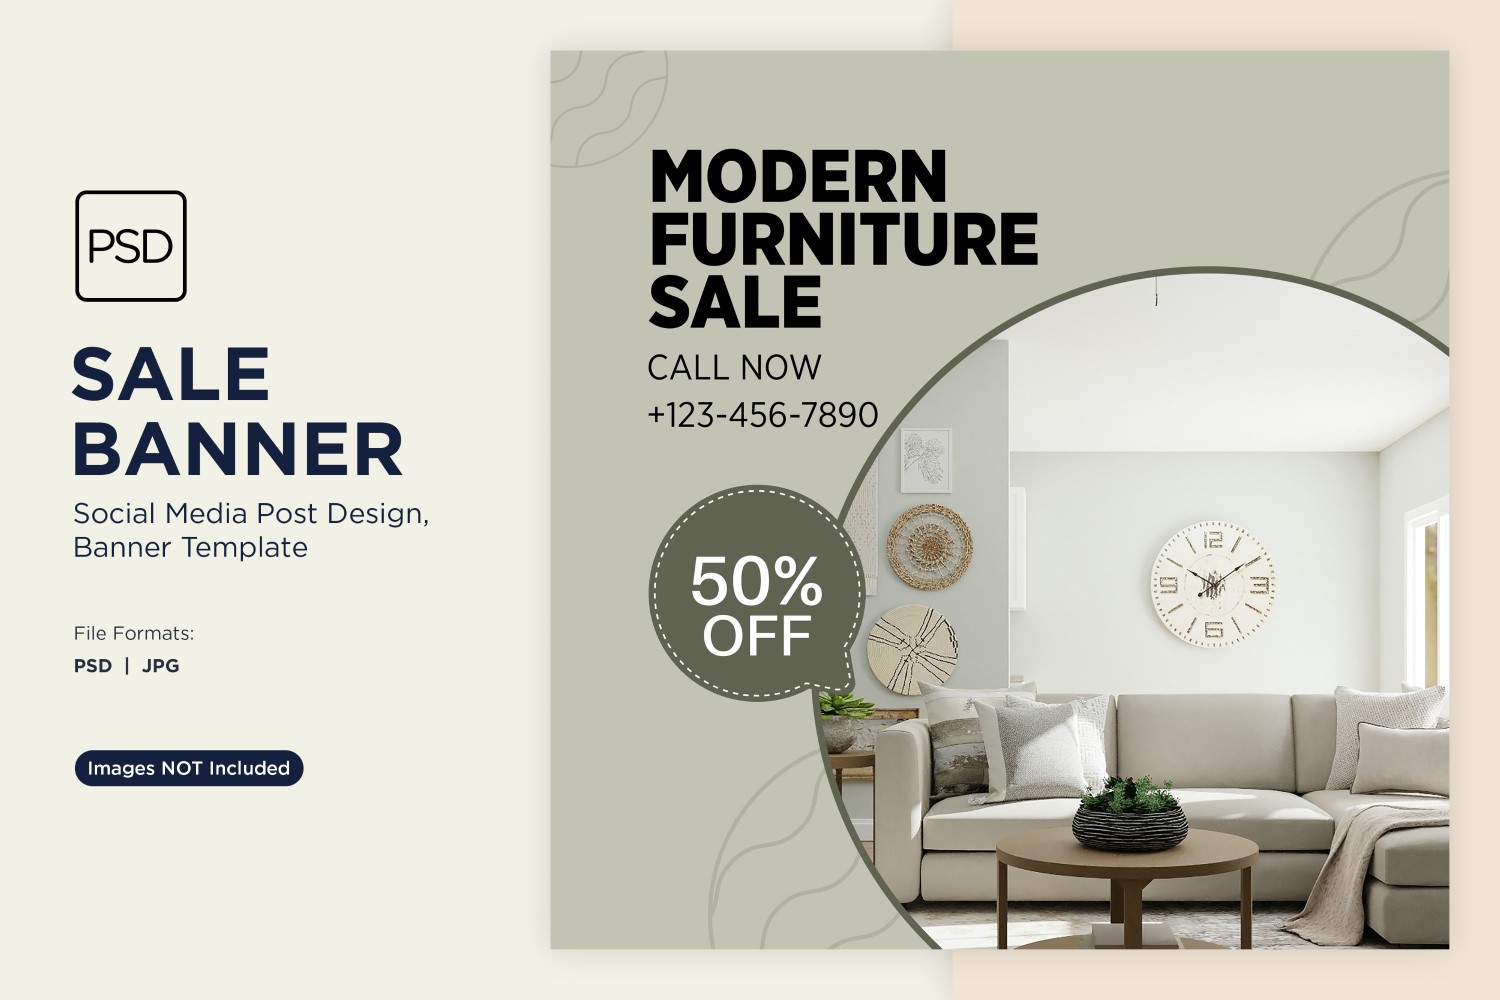 Big Sale on Modern Furniture Banner Design Template 3